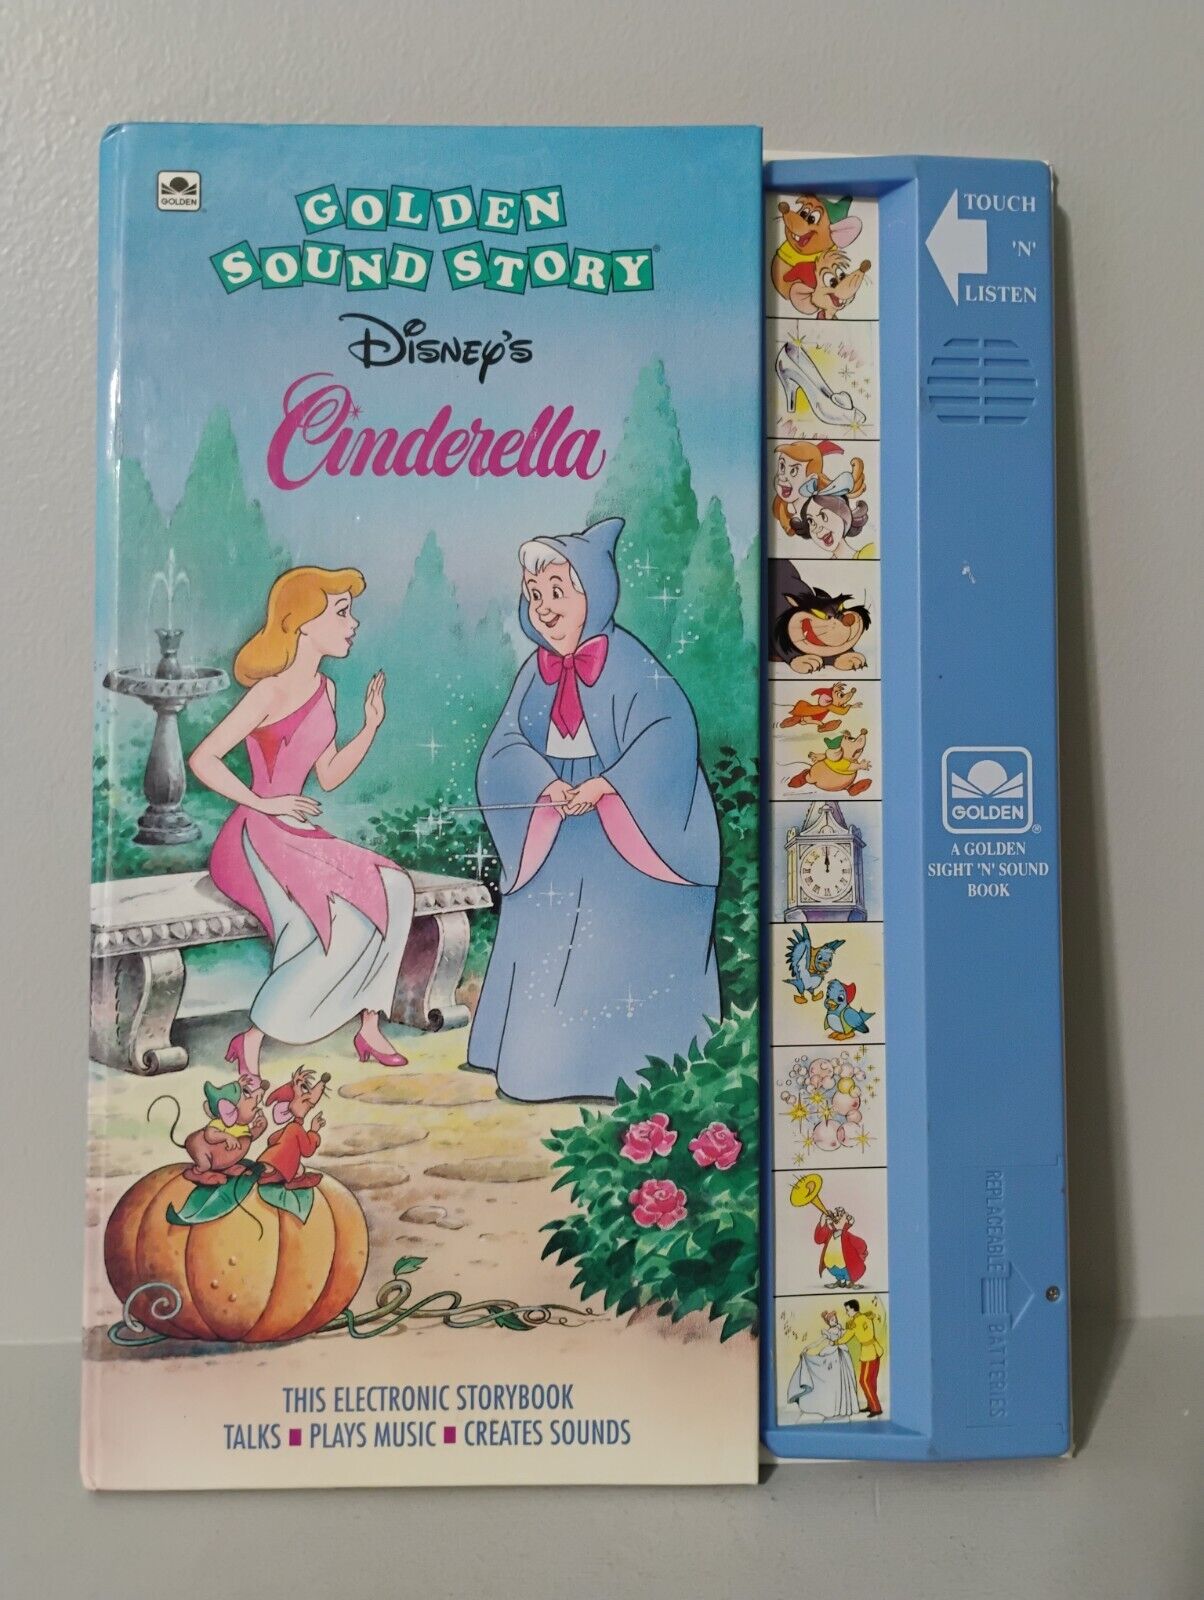 Vintage 1993 Golden Sound Story Disney Cinderella Electronic Storybook WORKS